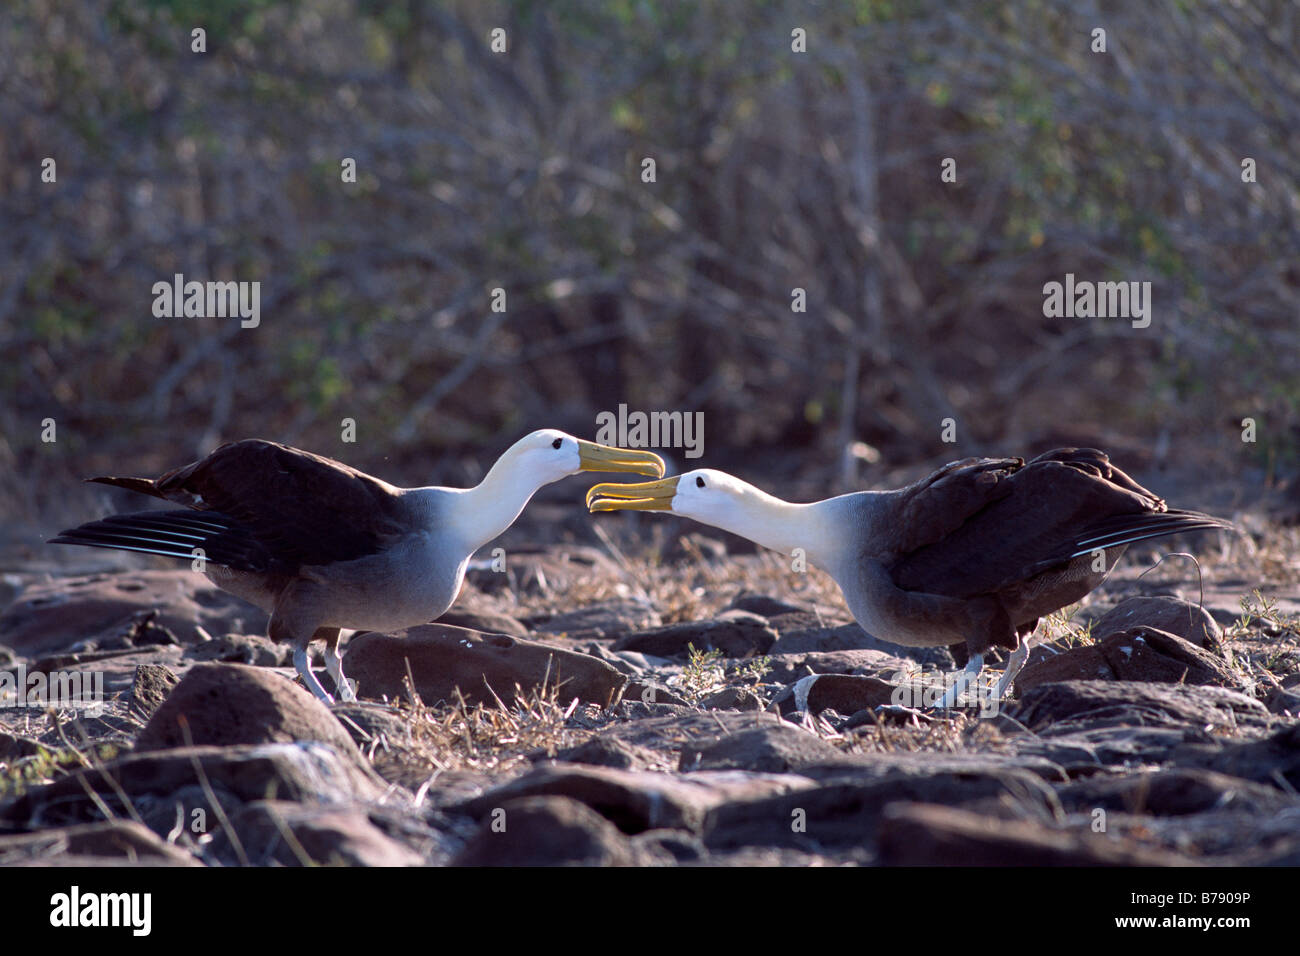 Winkte paar Albatros (Diomedea Irrorata) Balztanz, Insel Espanola, Galapagos Inseln, Galapagos-Inseln, Ecuador, Süd A Stockfoto